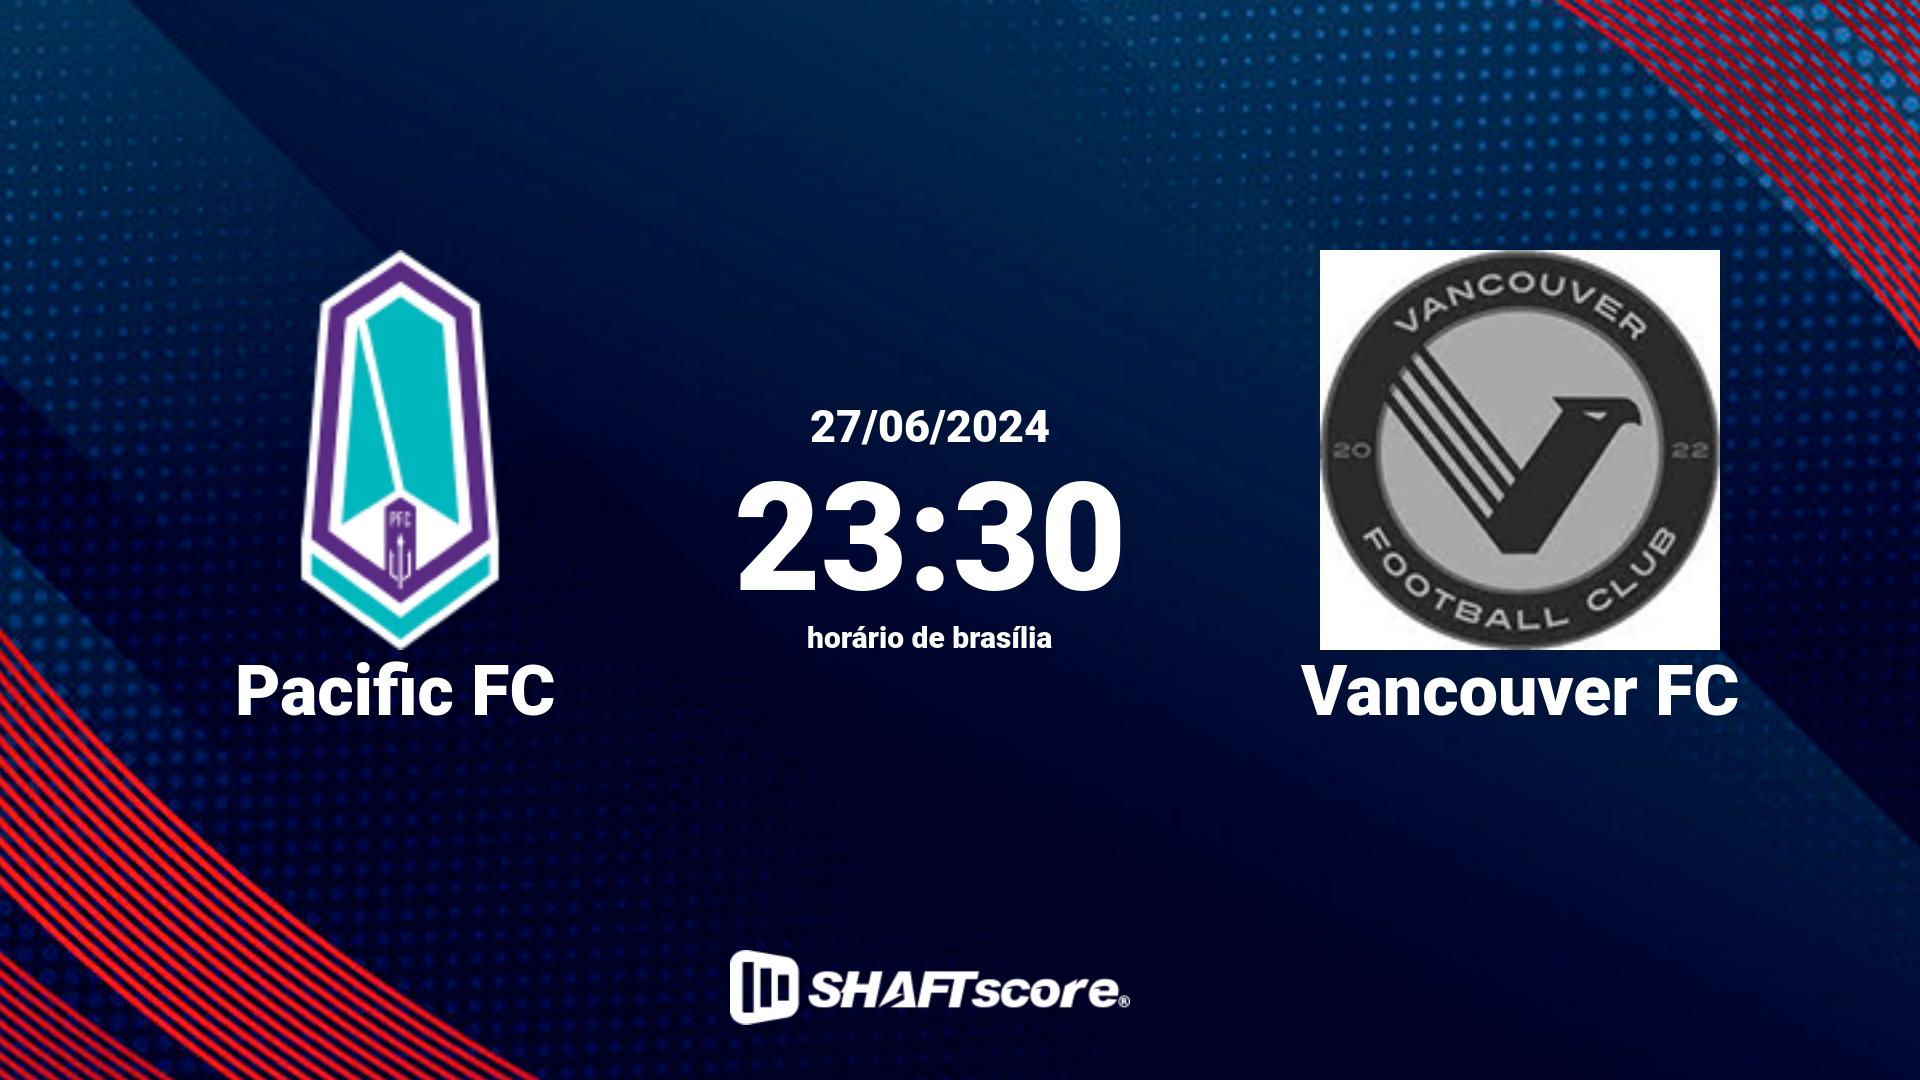 Estatísticas do jogo Pacific FC vs Vancouver FC 27.06 23:30